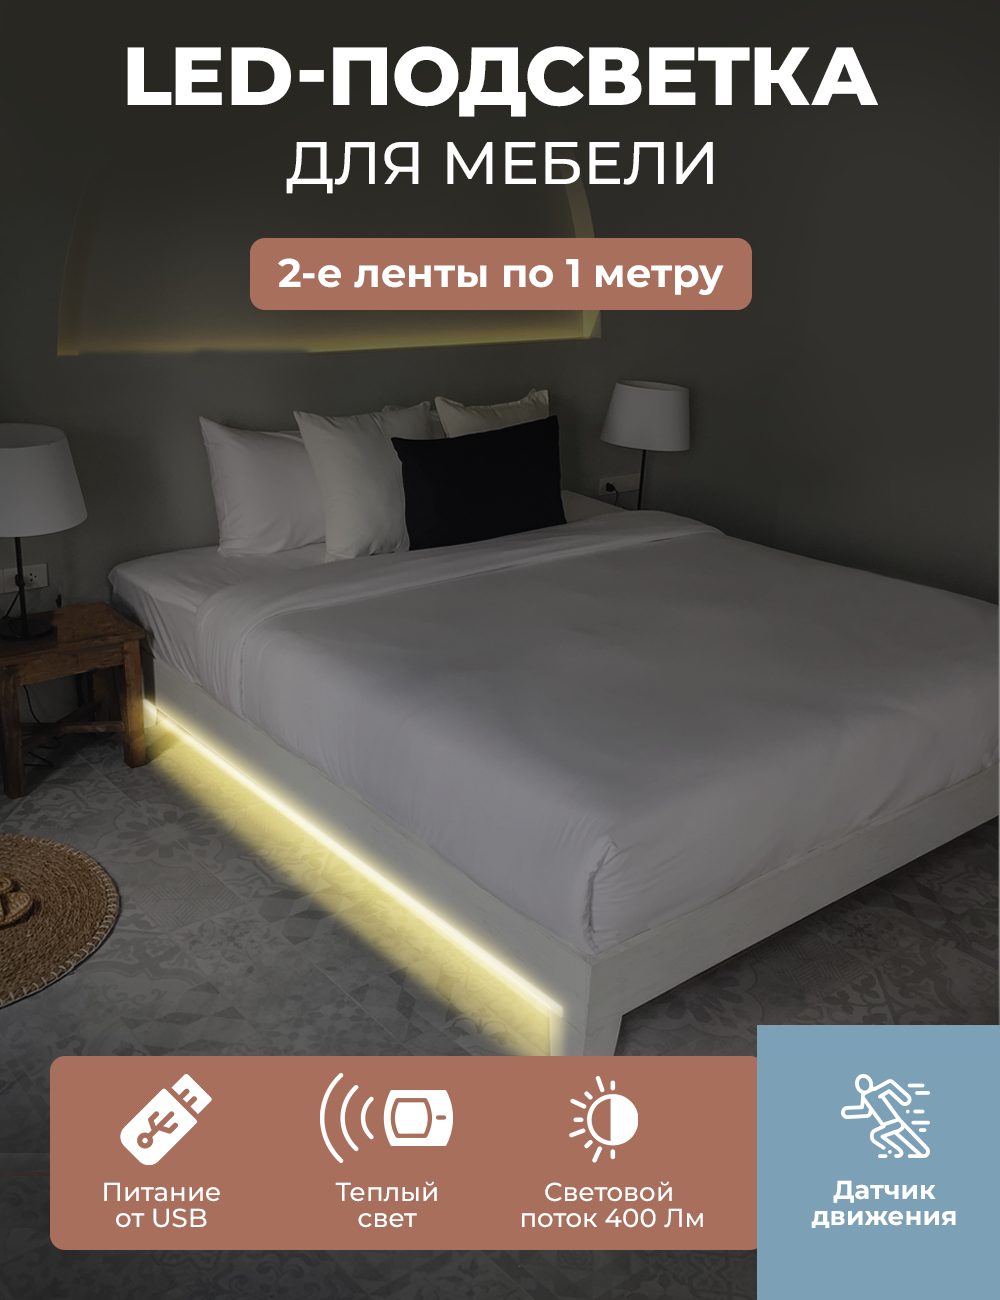 93738051 Комплект подсветки для двуспальной кровати BL9-USB2 2х1м, USB, 5V STLM-0562685 ГЕЛЕОС